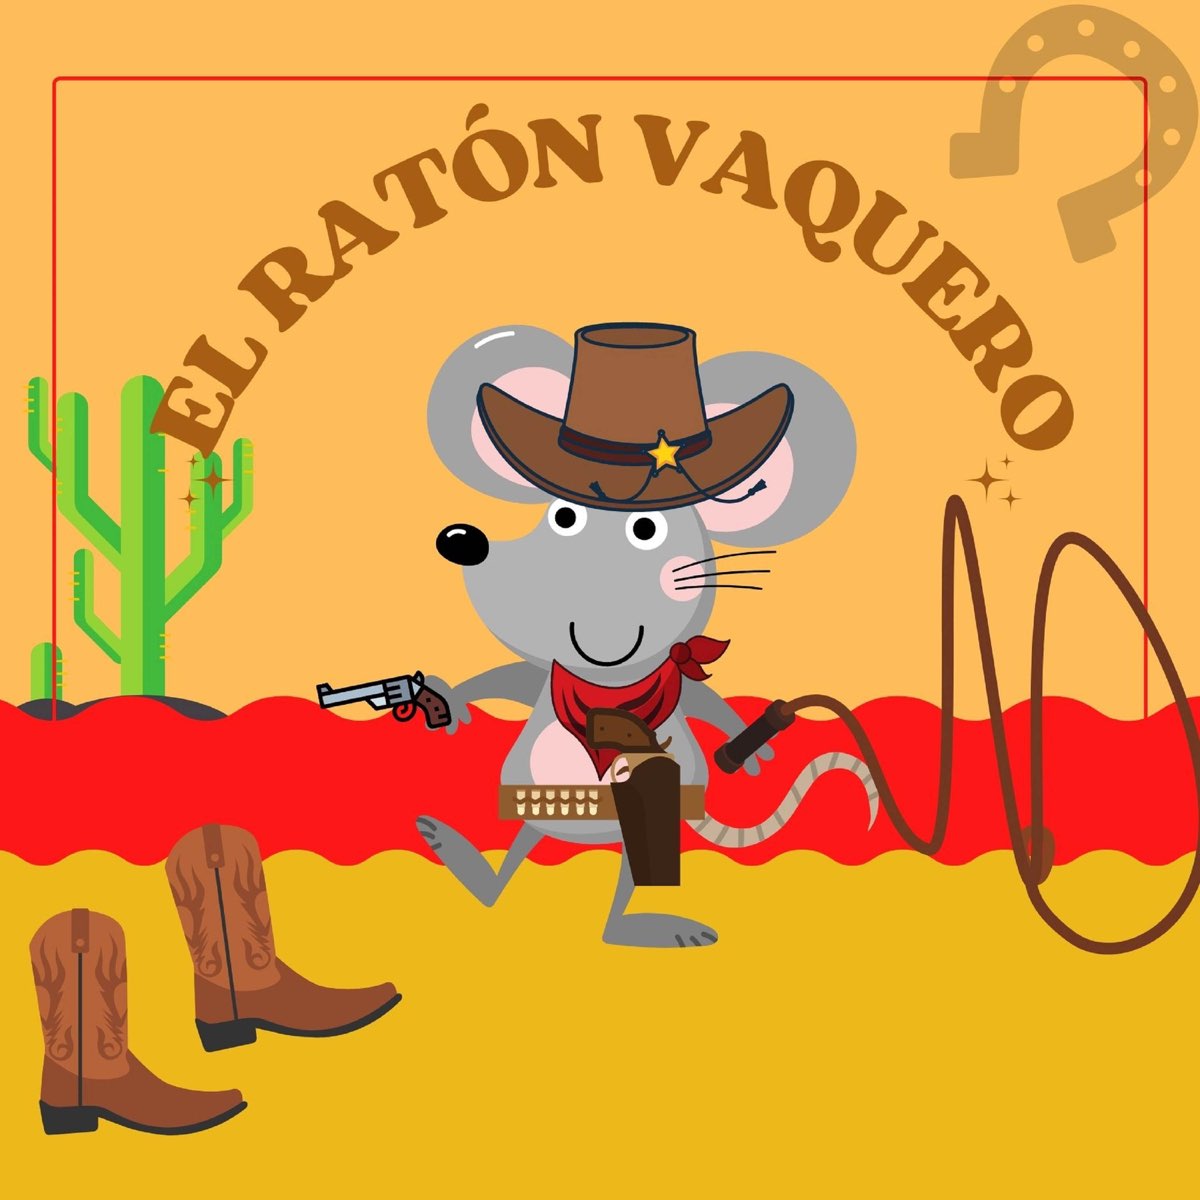 El Ratón Vaquero by La Vaca Lola La Vaca Lola, Canciones Infantiles &  Canciones Infantiles de Niños on Apple Music